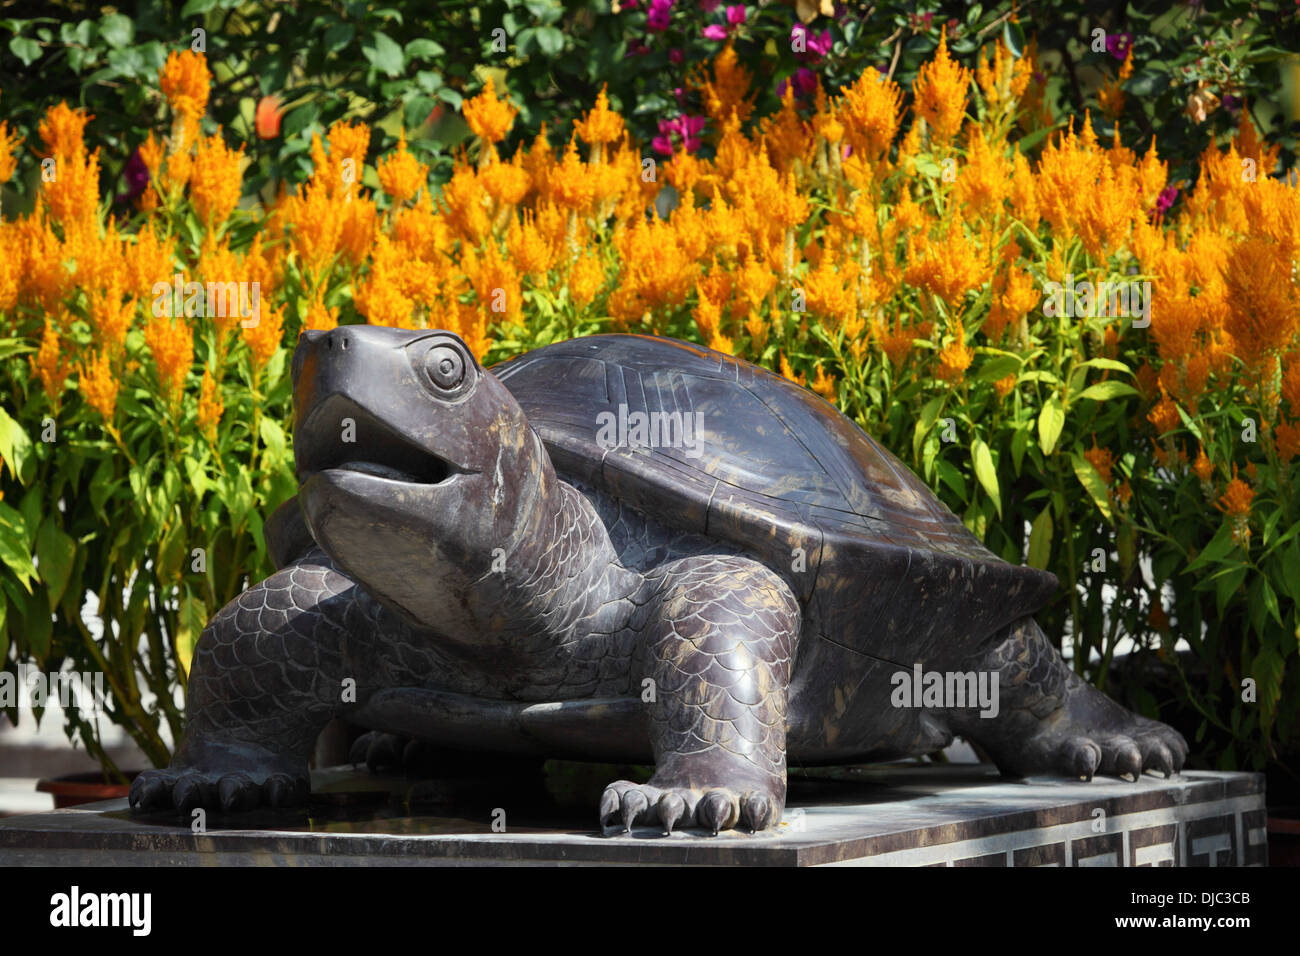 Asiatische Schildkröte Statue in einem Garten Stockfoto